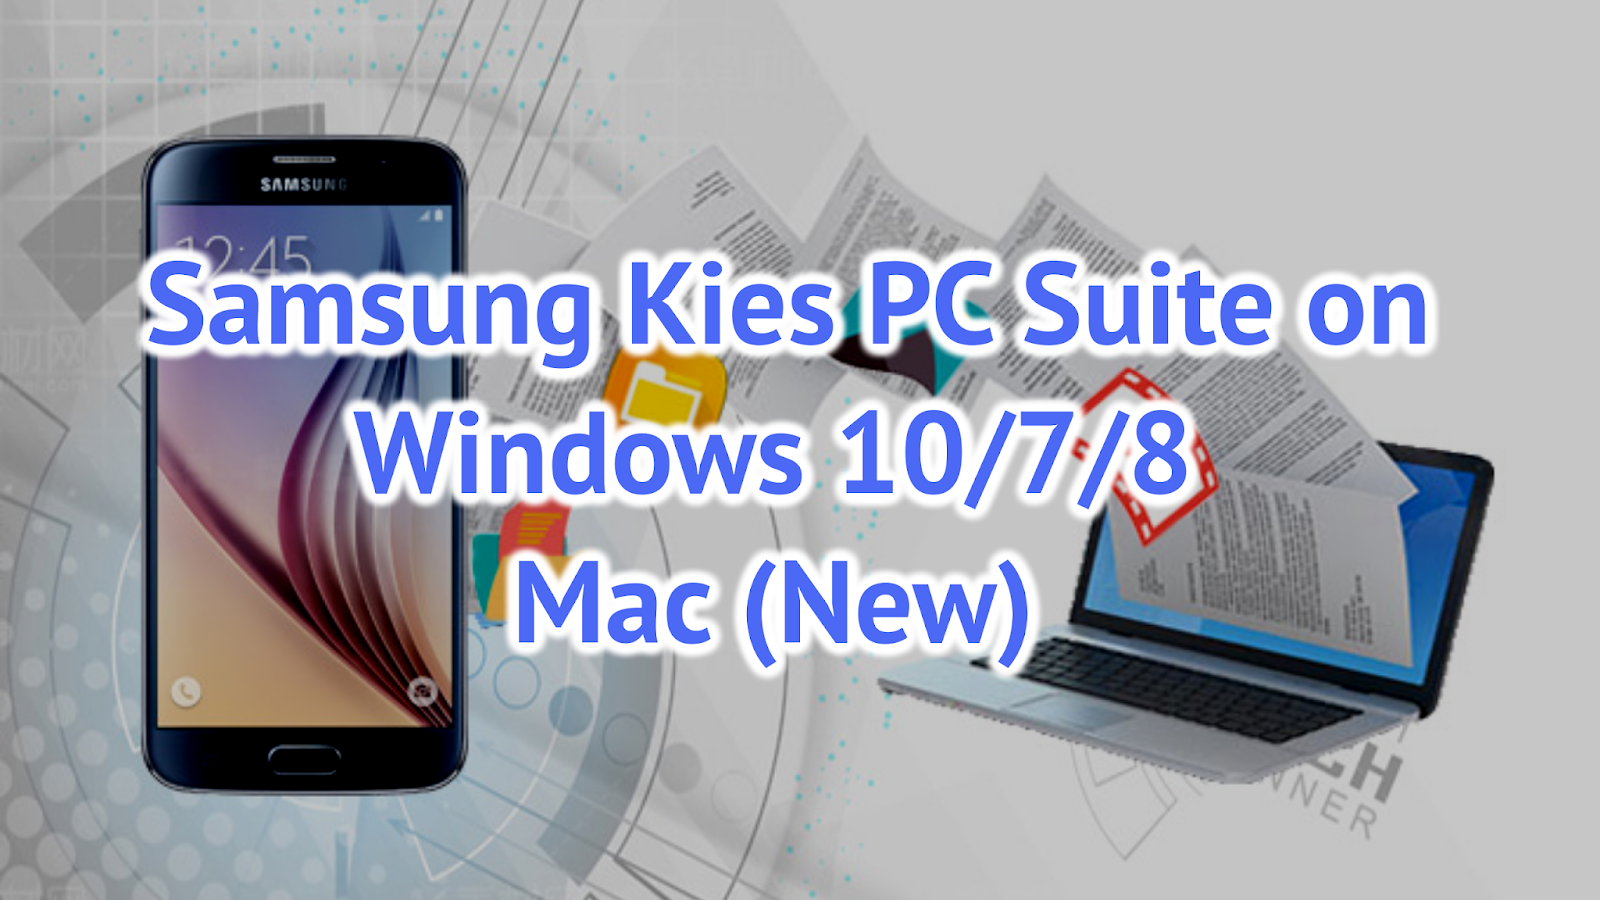 Samsung Kies PC Suite on Windows